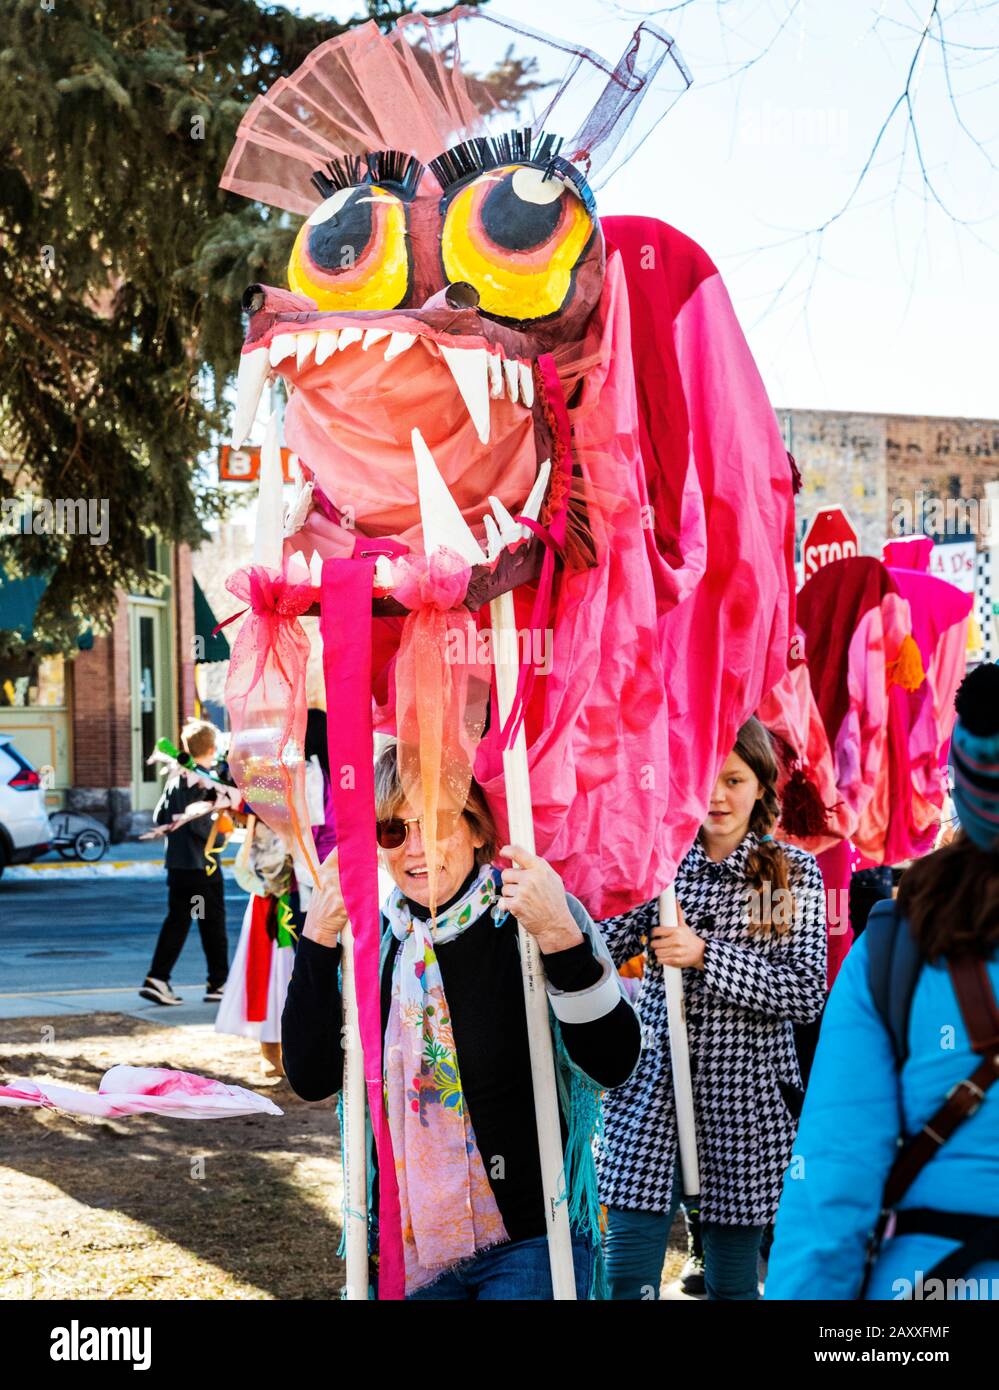 Kinder und Erwachsene tanzen in ausgefallenen Kostümen in Salida, Colorado's, 3. Jährliche Lunar New Year Parade. Stockfoto